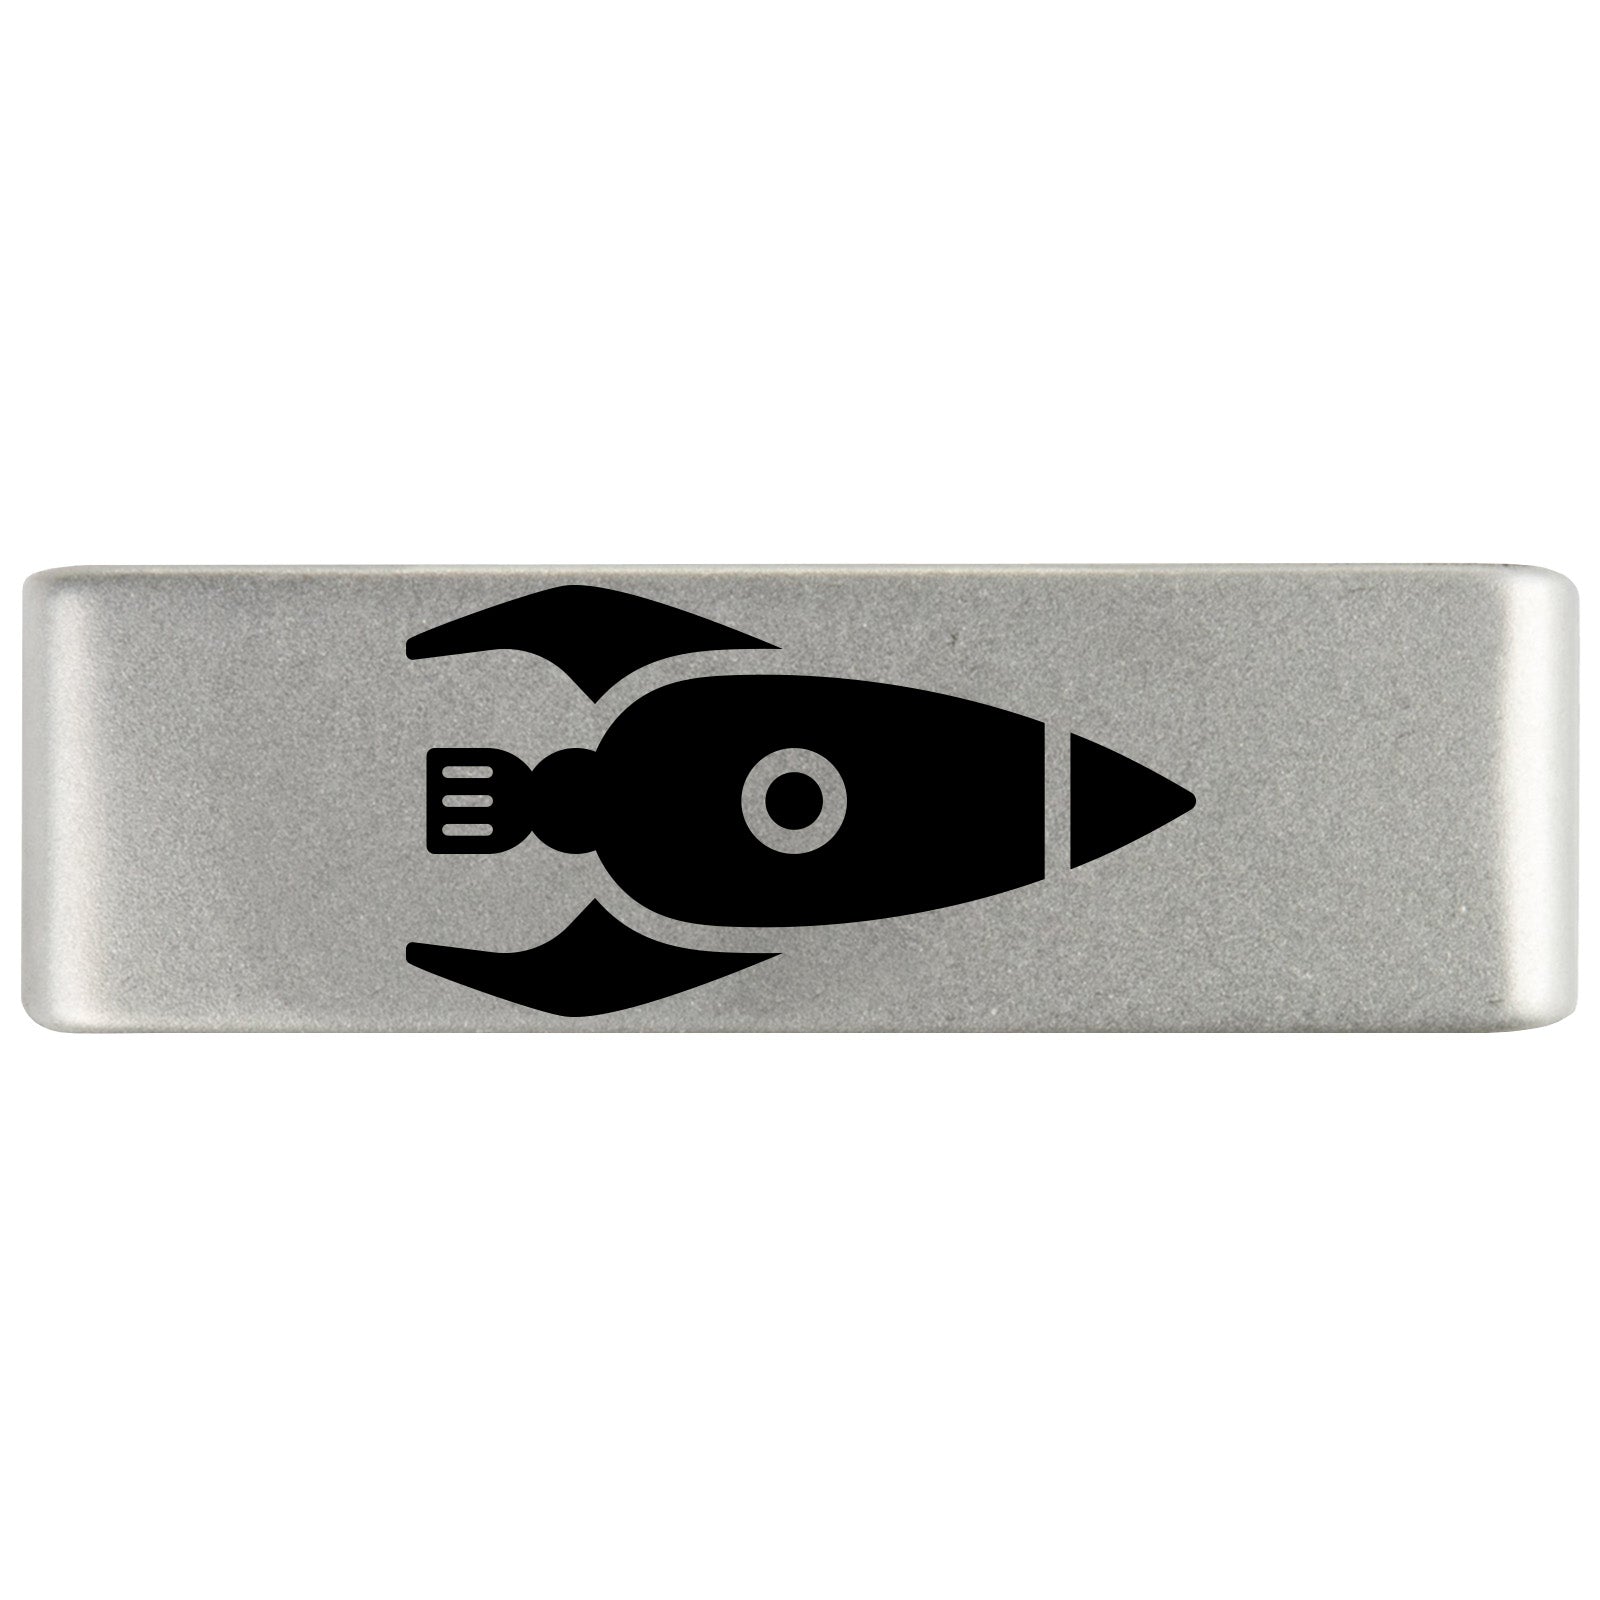 Rocketship Badge Badge 19mm - ROAD iD